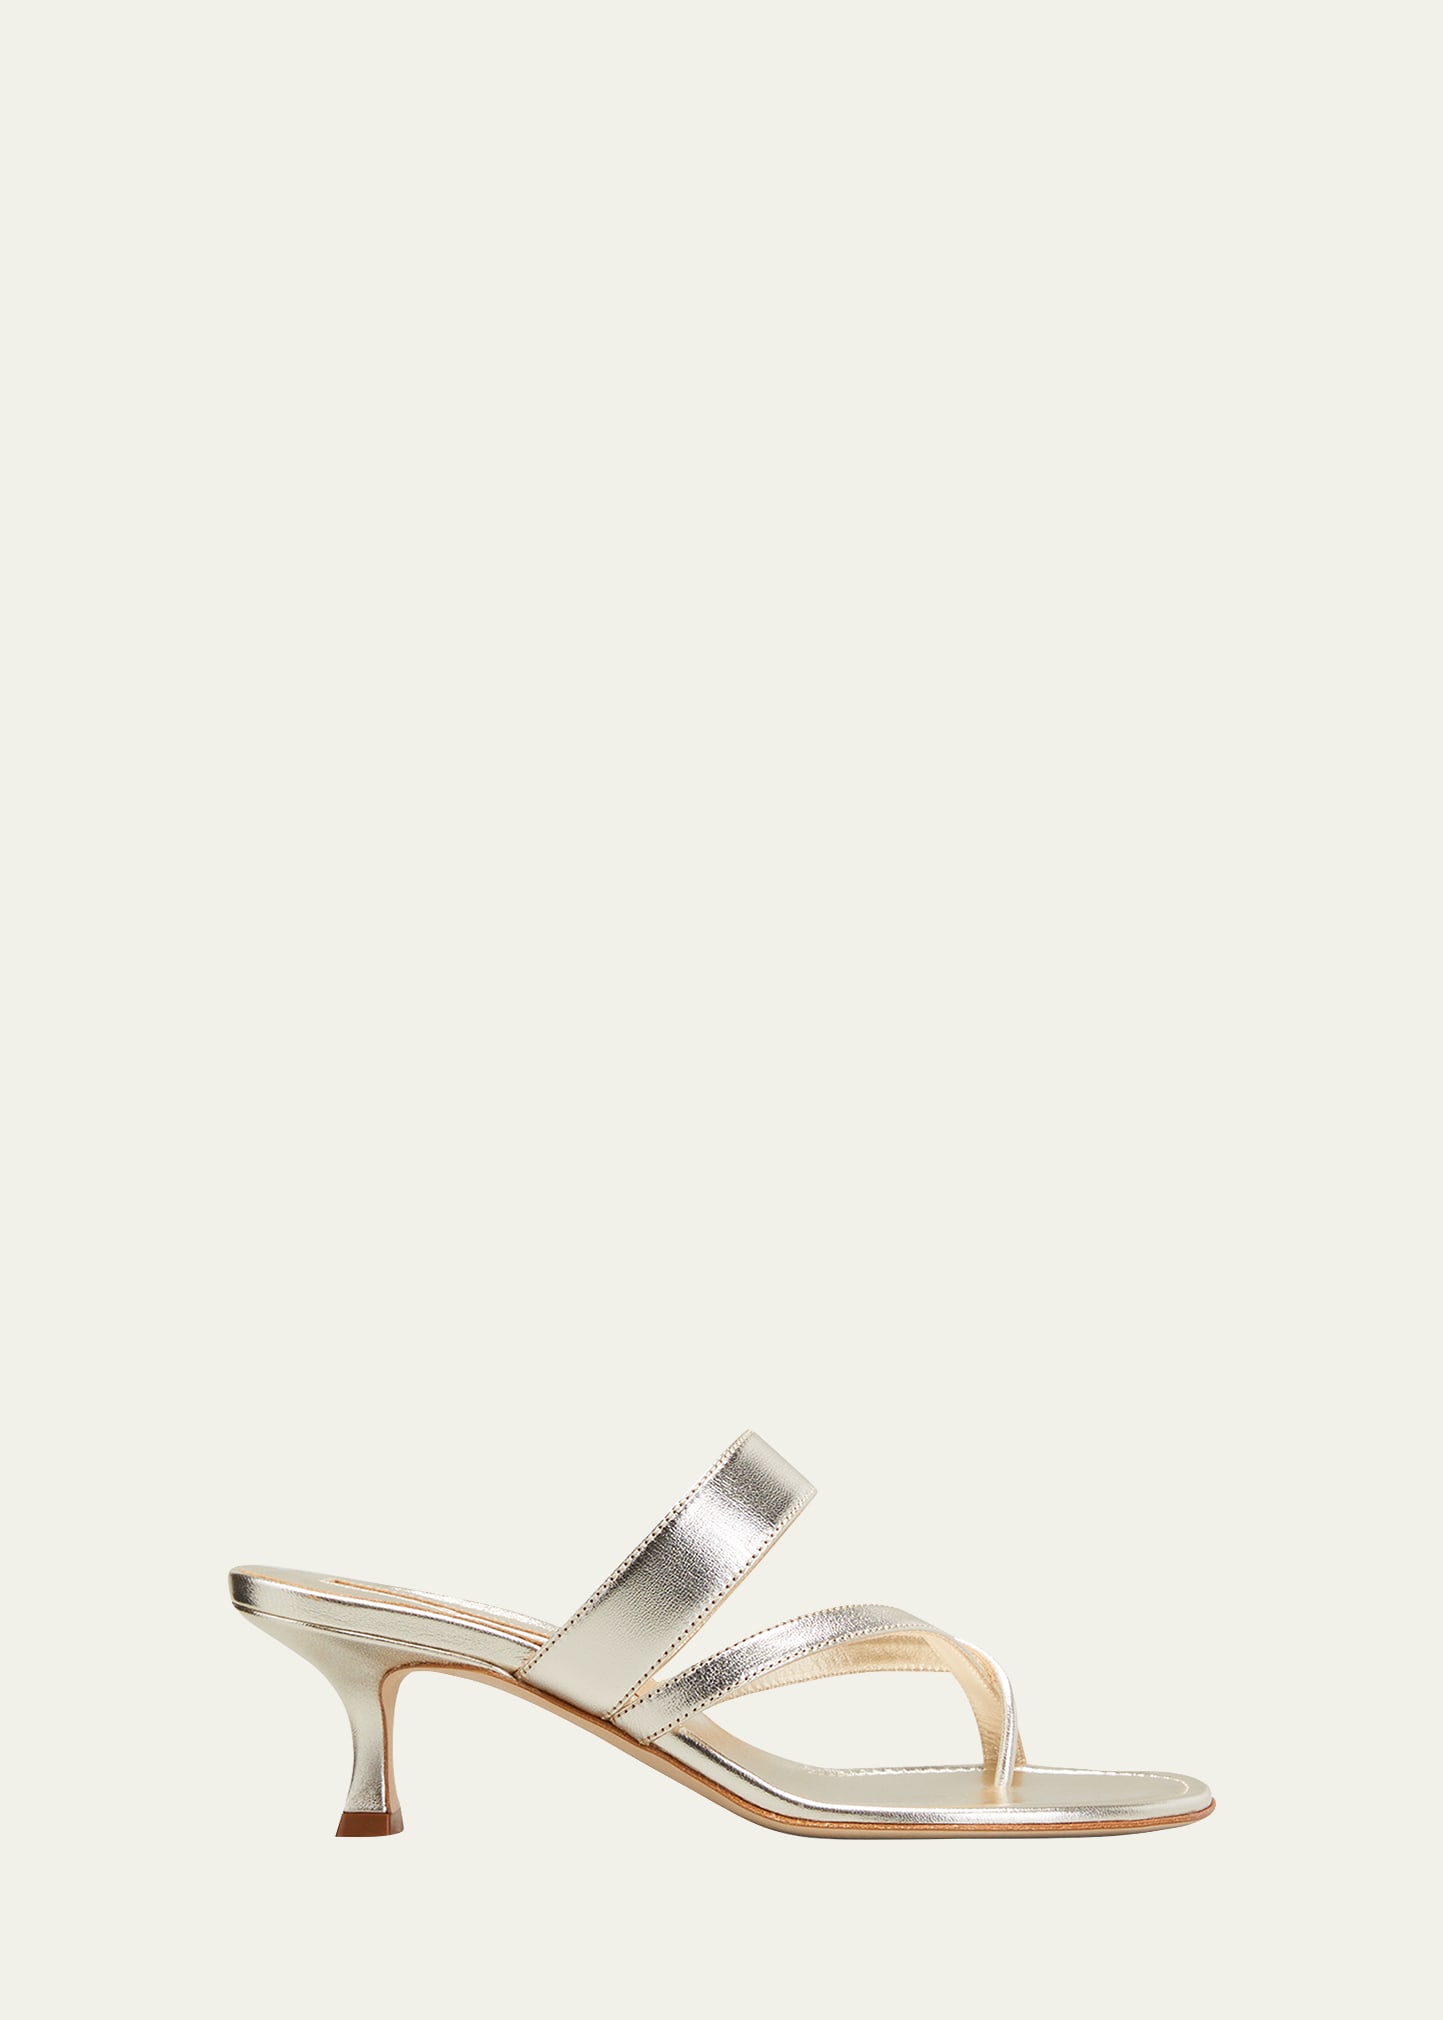 Shop Manolo Blahnik Susa Metallic Crisscross Mule Sandals In Gold7103